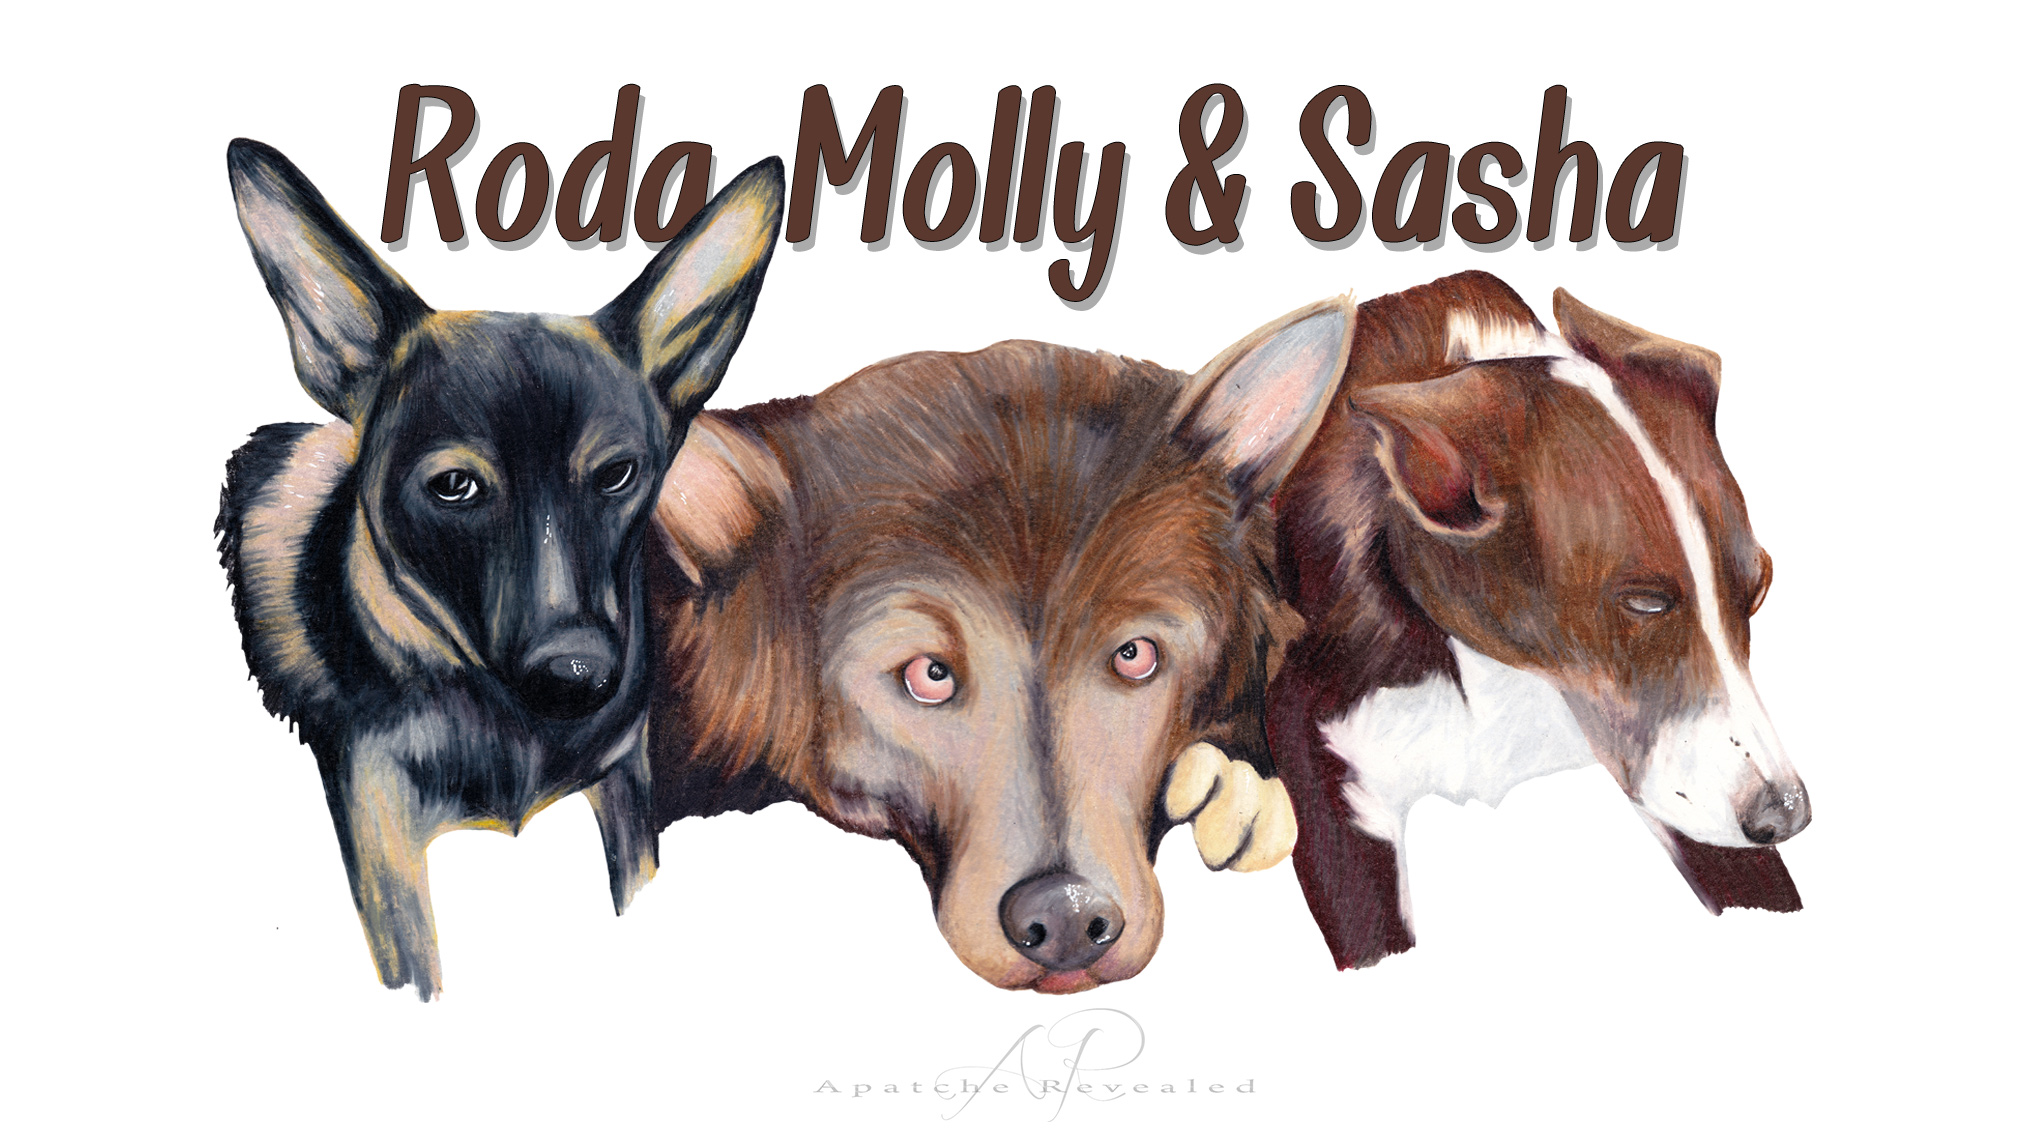 Roda, Molly & Sasha